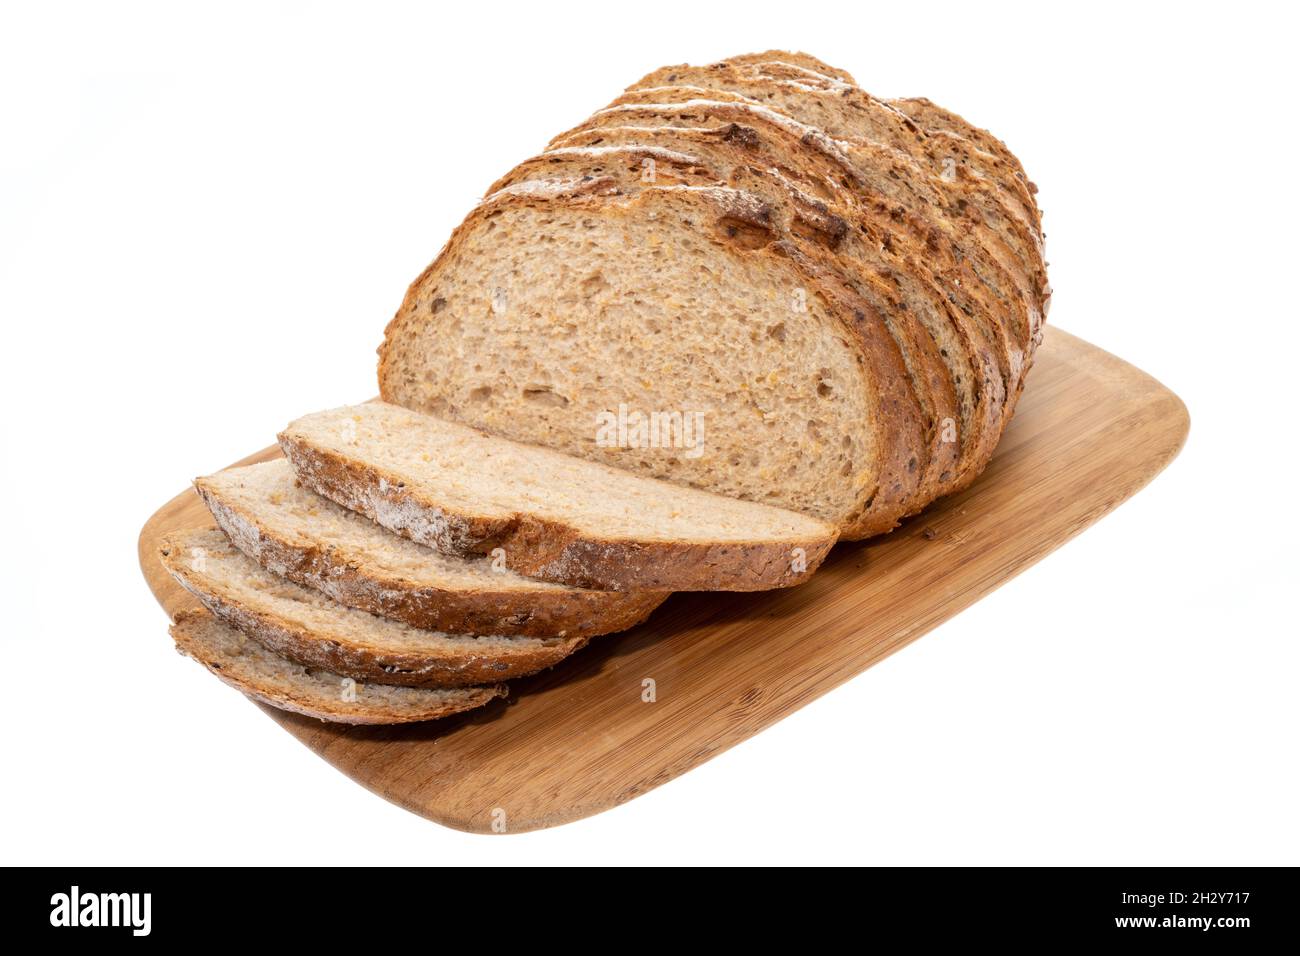 Un pain coupé en tranches de pain d'épeautre - fond blanc Photo Stock -  Alamy